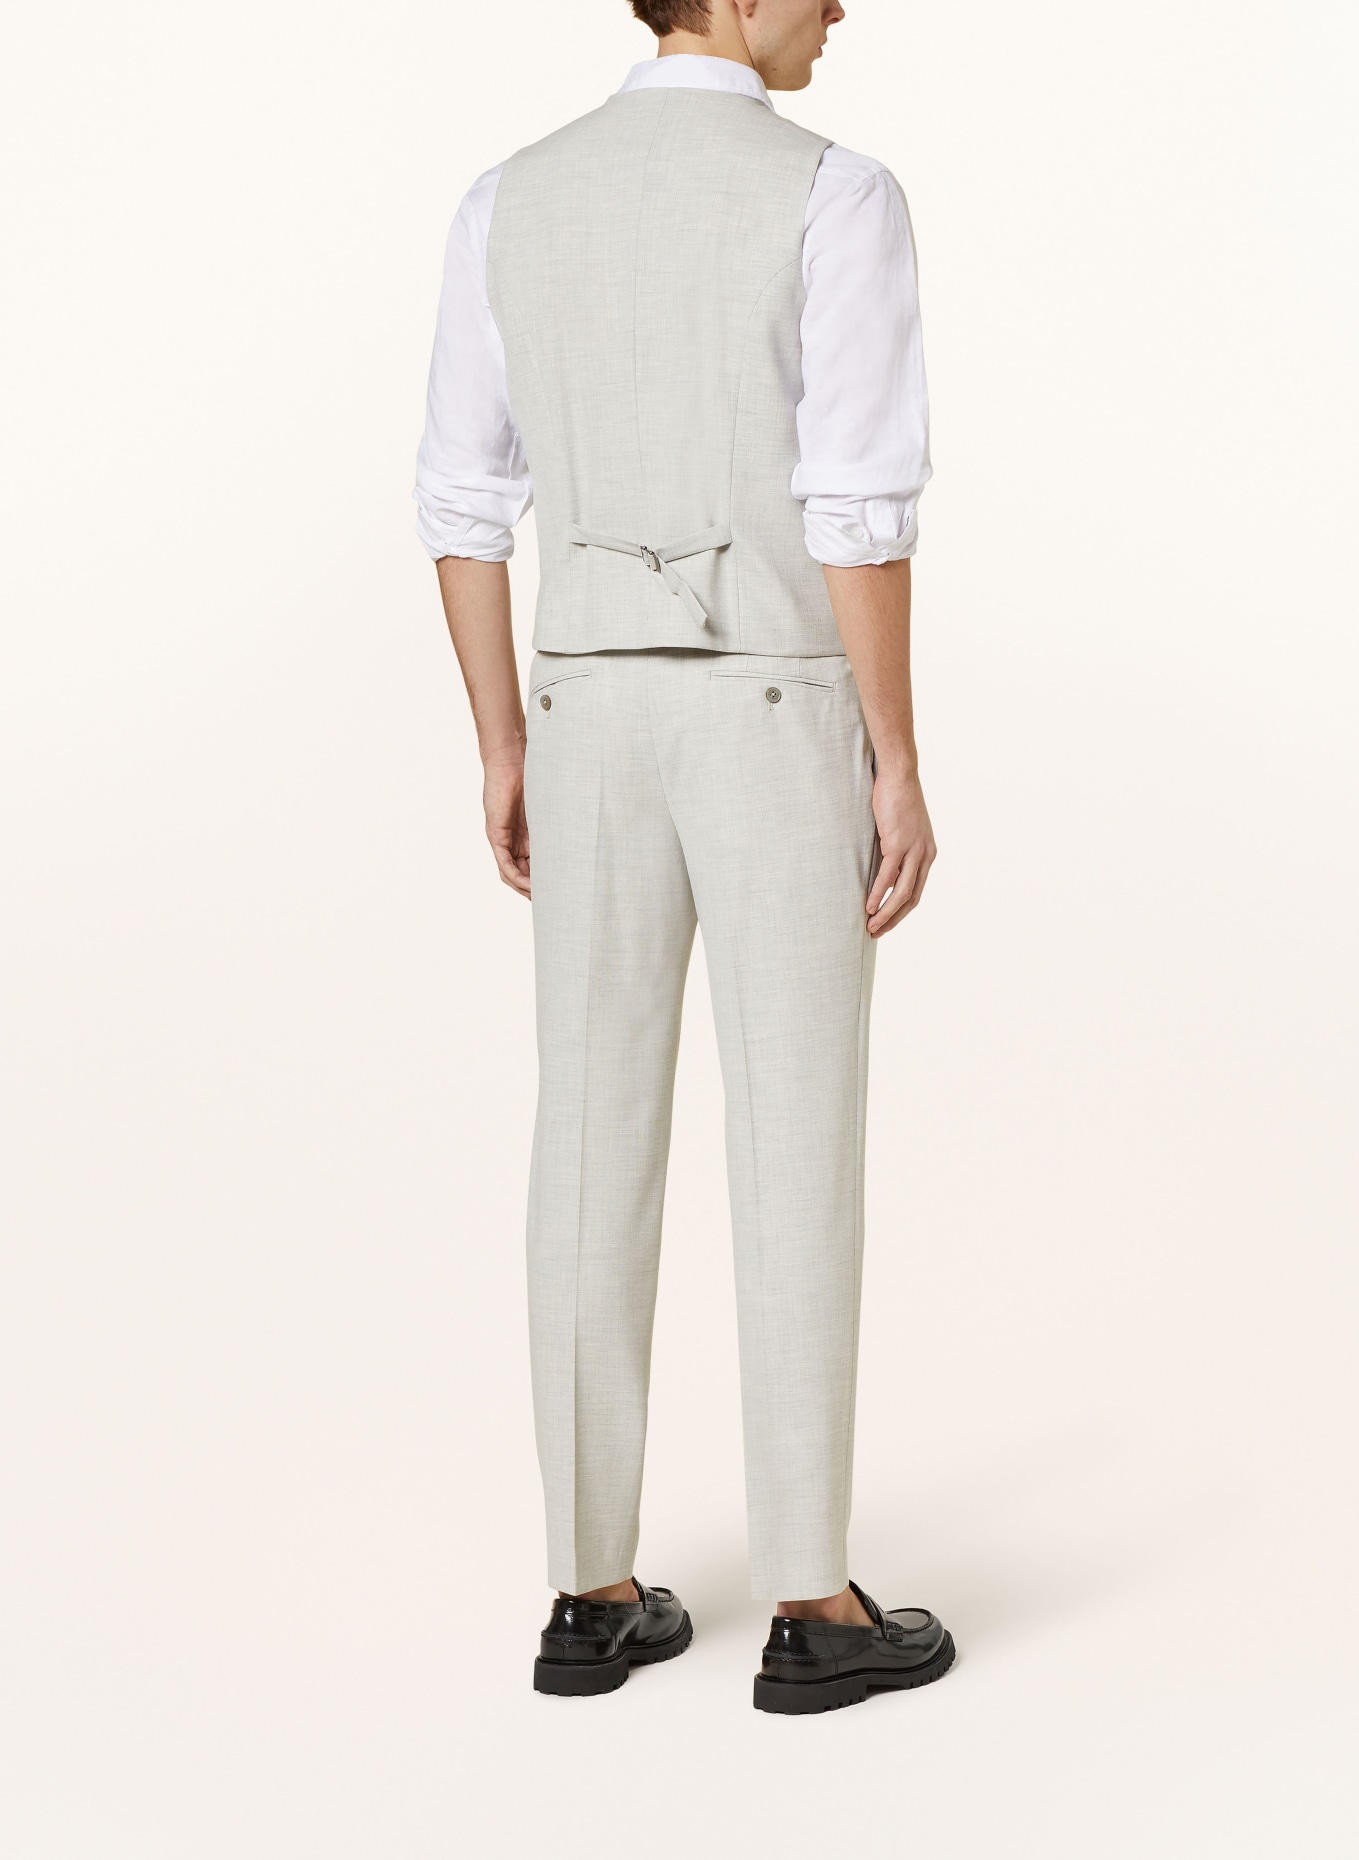 PAUL Suit vest extra slim fit, Color: LIGHT GRAY (Image 4)